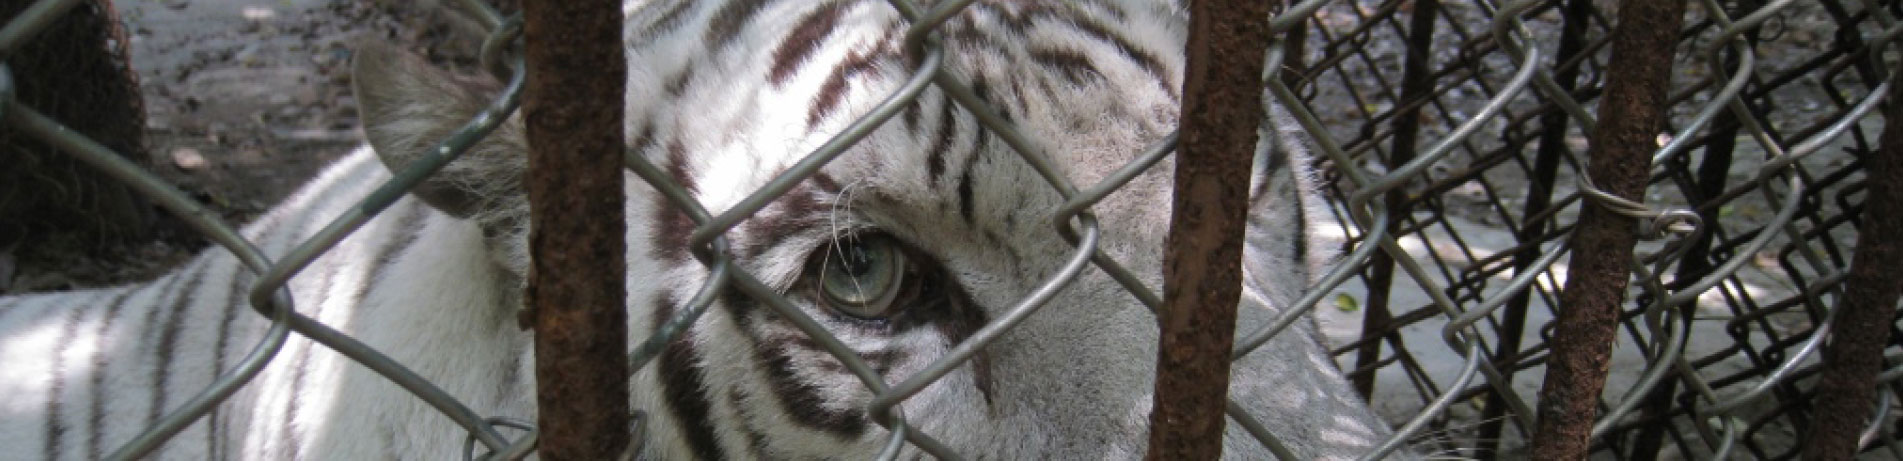 Close-up image of captive tiger behind a fence, Gulin, China